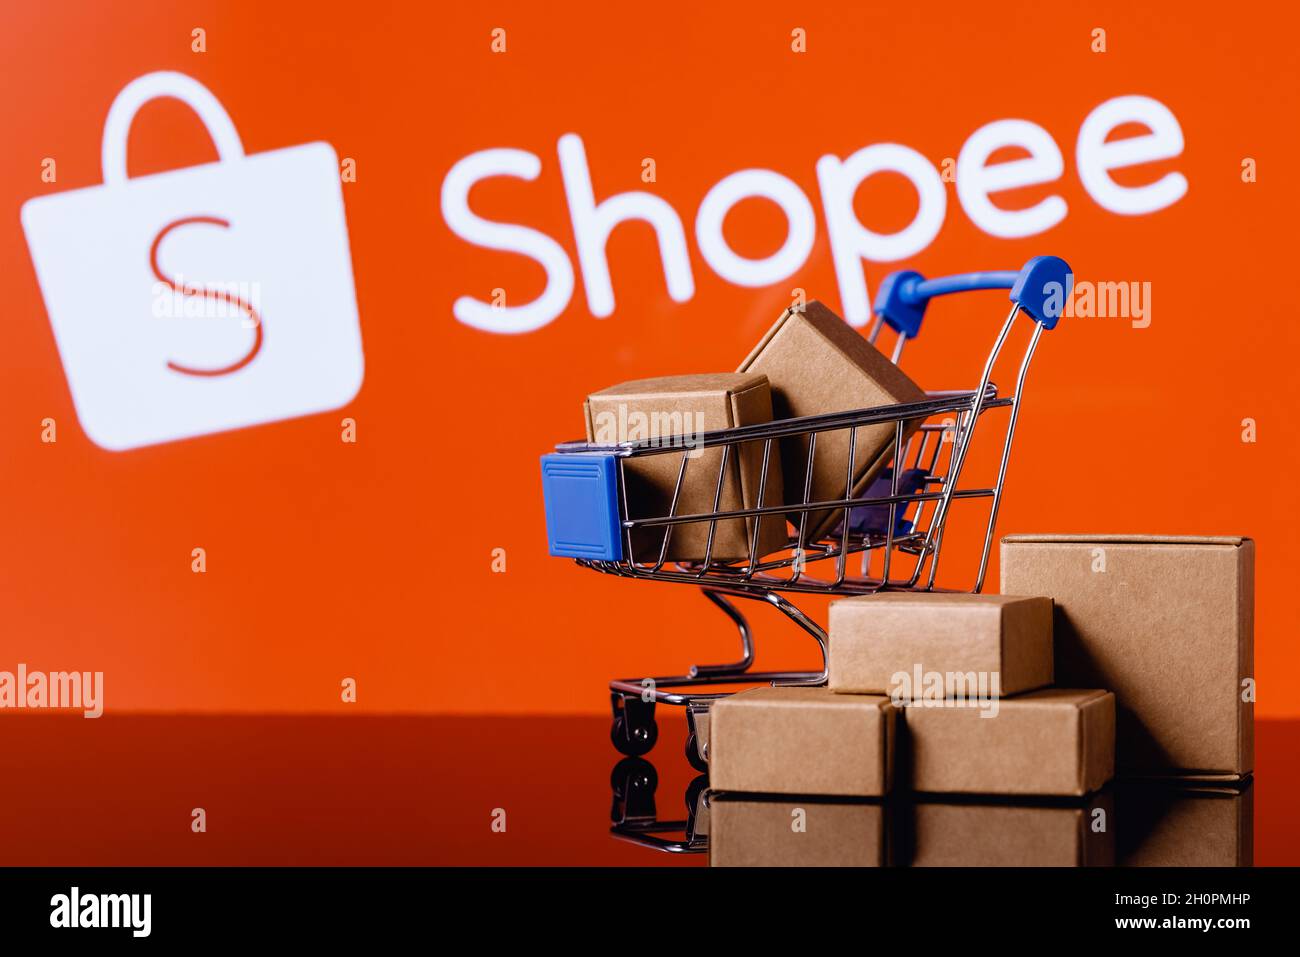 Shopee ist ein E-Commerce-Technologieunternehmen. Warenkorb mit Paketen auf dem Hintergrund des Shopee-Logos. Stockfoto